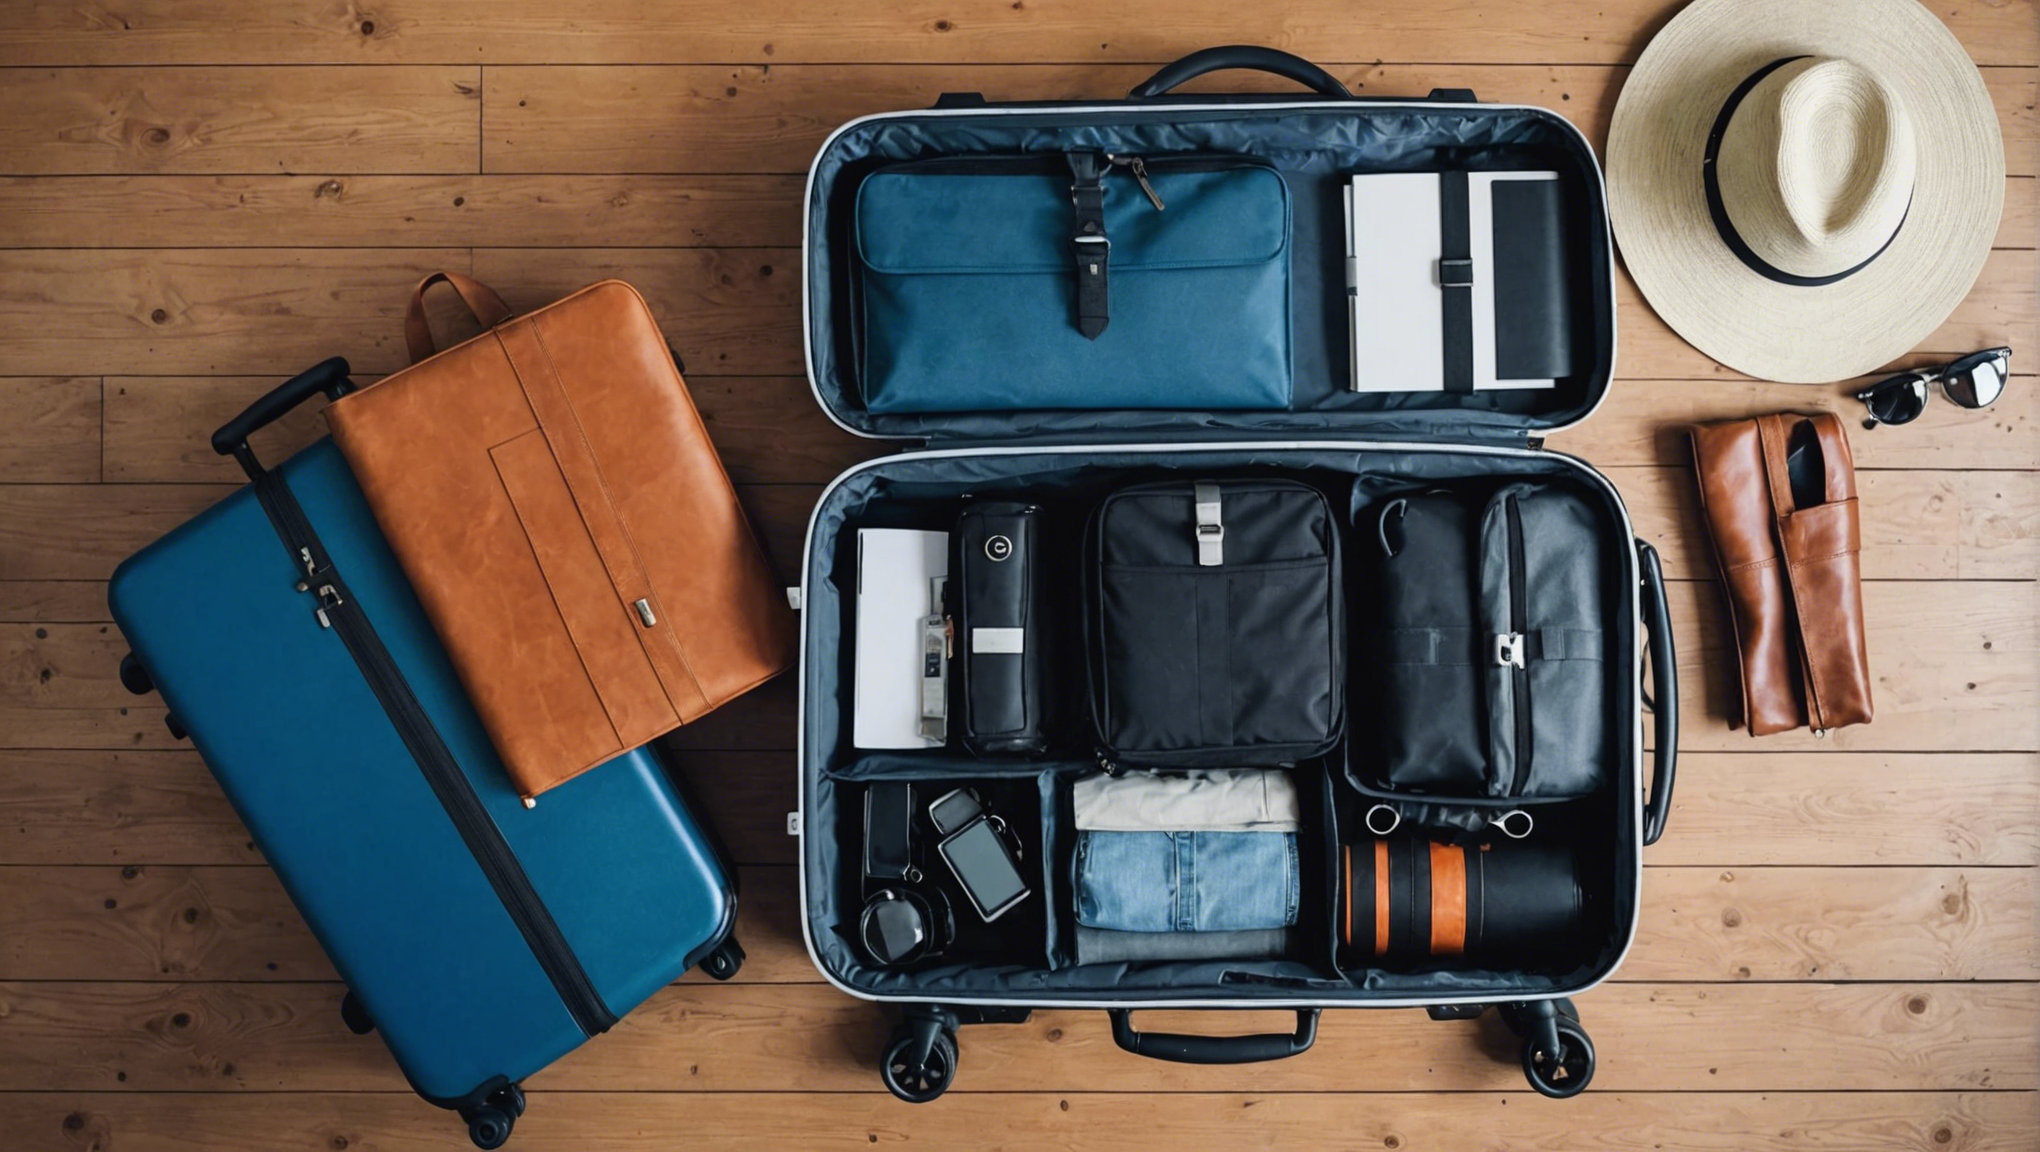 découvrez les meilleures astuces pour assurer la sécurité de votre valise en voyage et voyager sereinement.